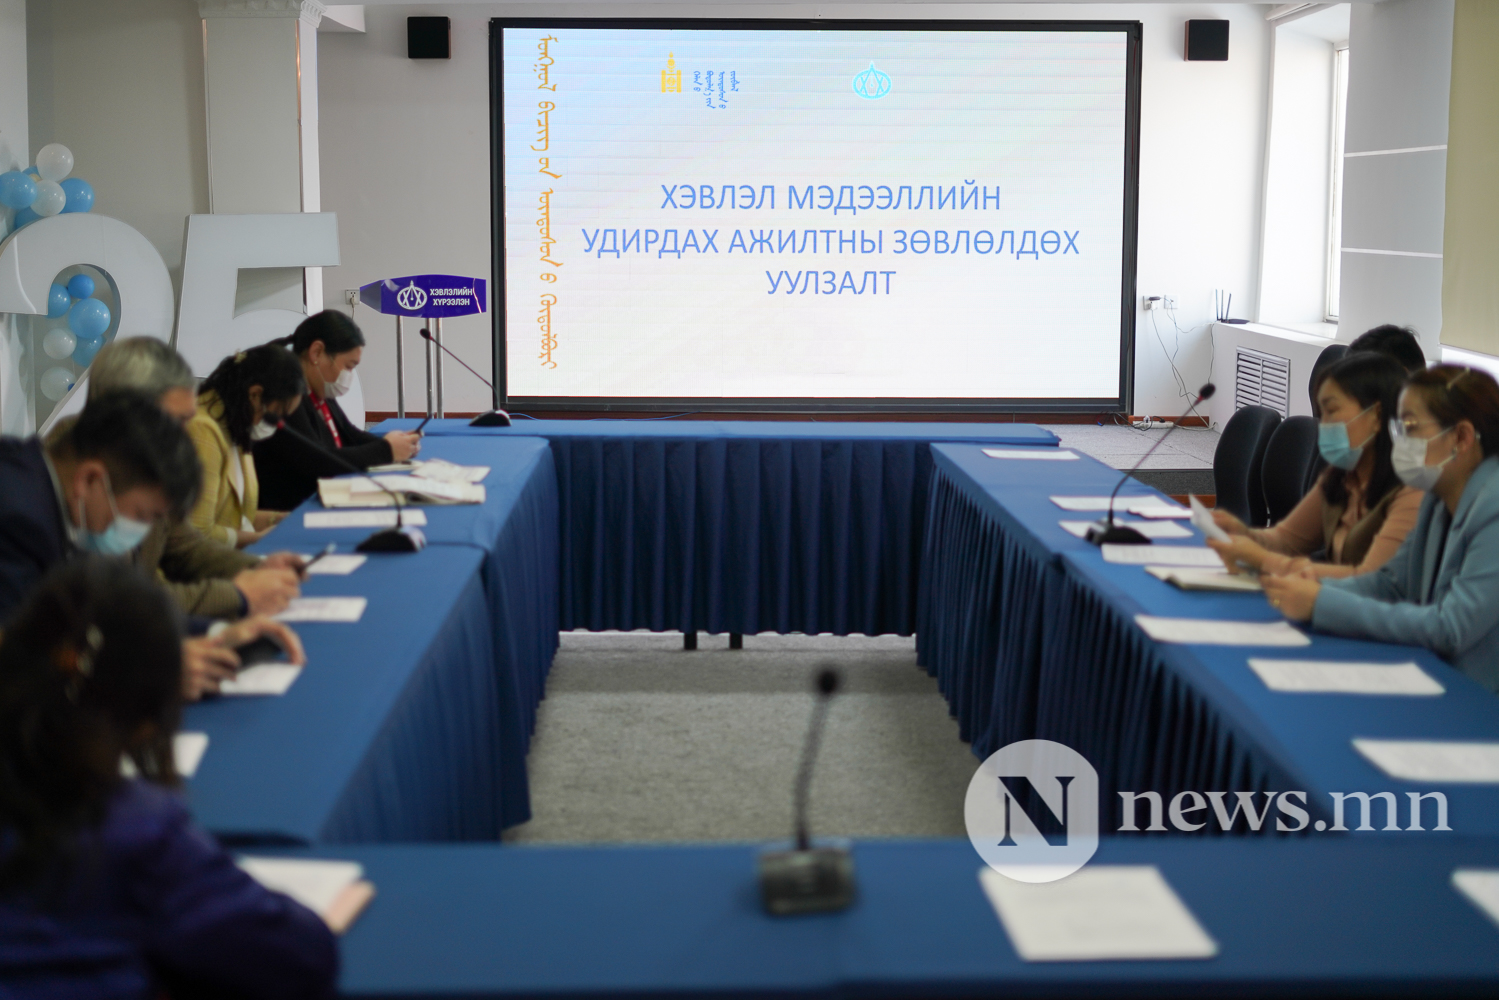 Монгол бичгийн үндэсний хөтөлбөрийг хэрэгжүүлэхэд хэвлэл мэдээллийн байгууллагуудын үүрэг, оролцоо (2 of 14)